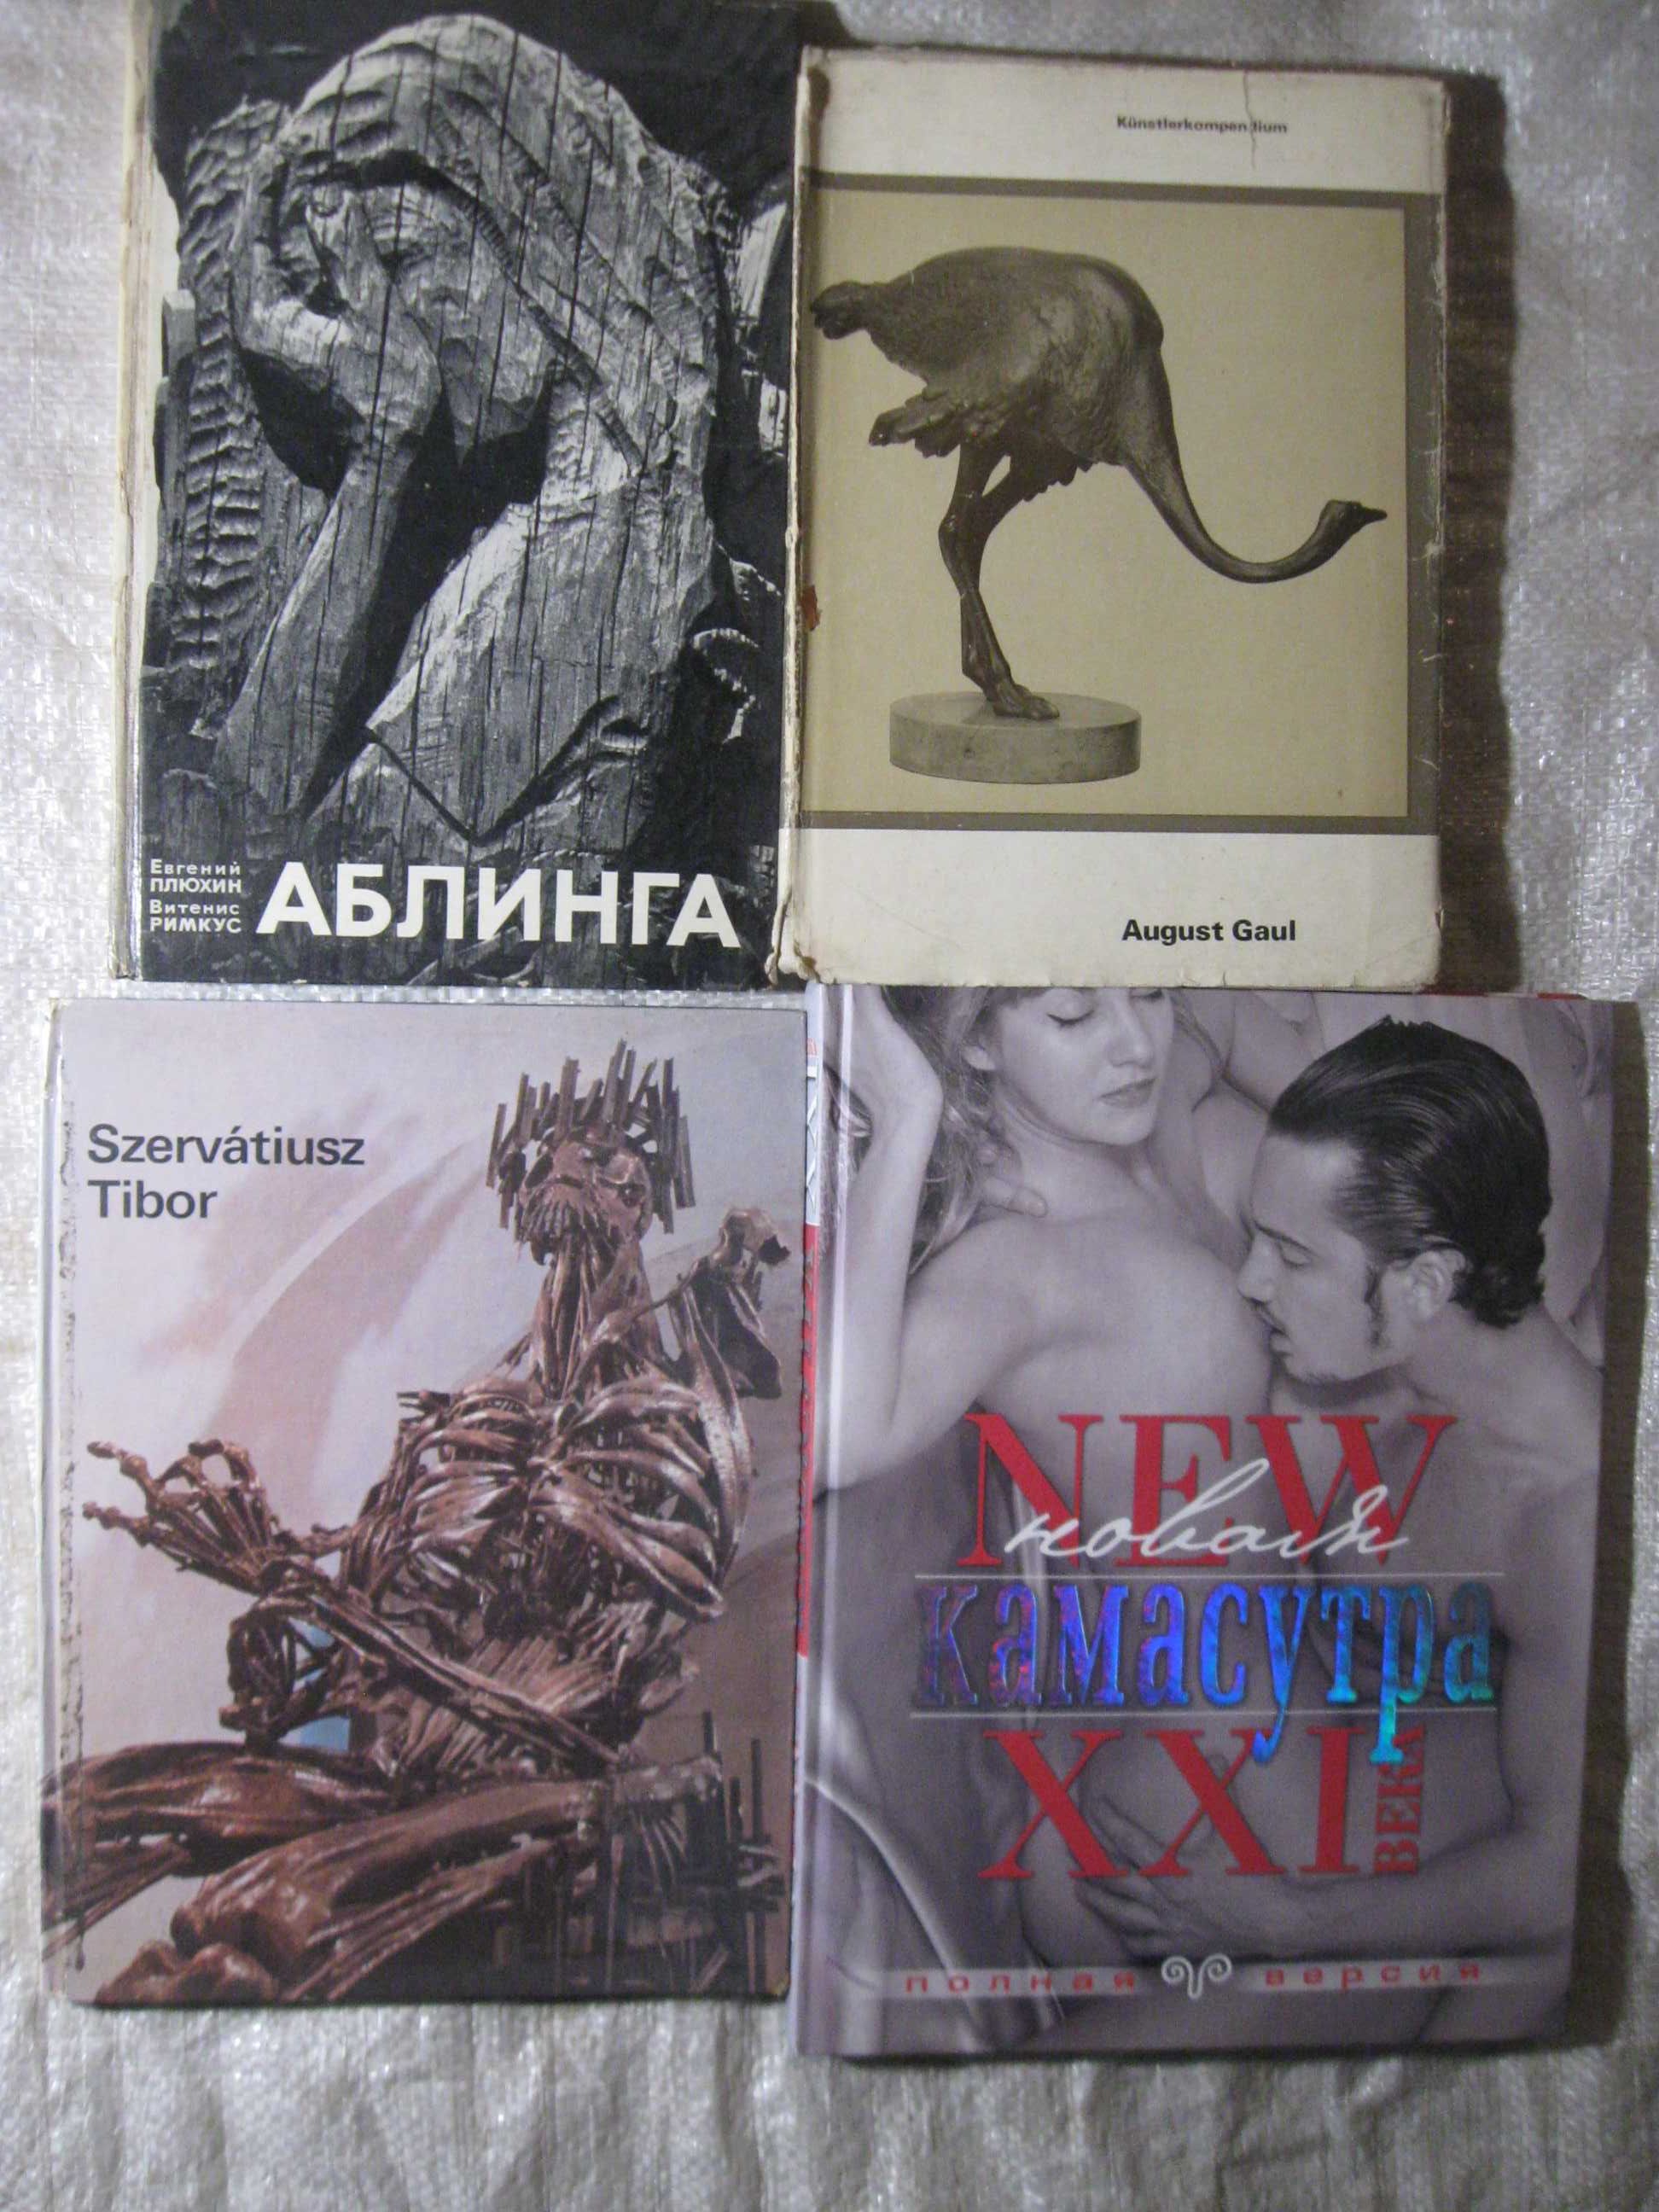 Книжки:  Новая Камасутра,August GauI,Szervatiusz Tibor,Аблинга